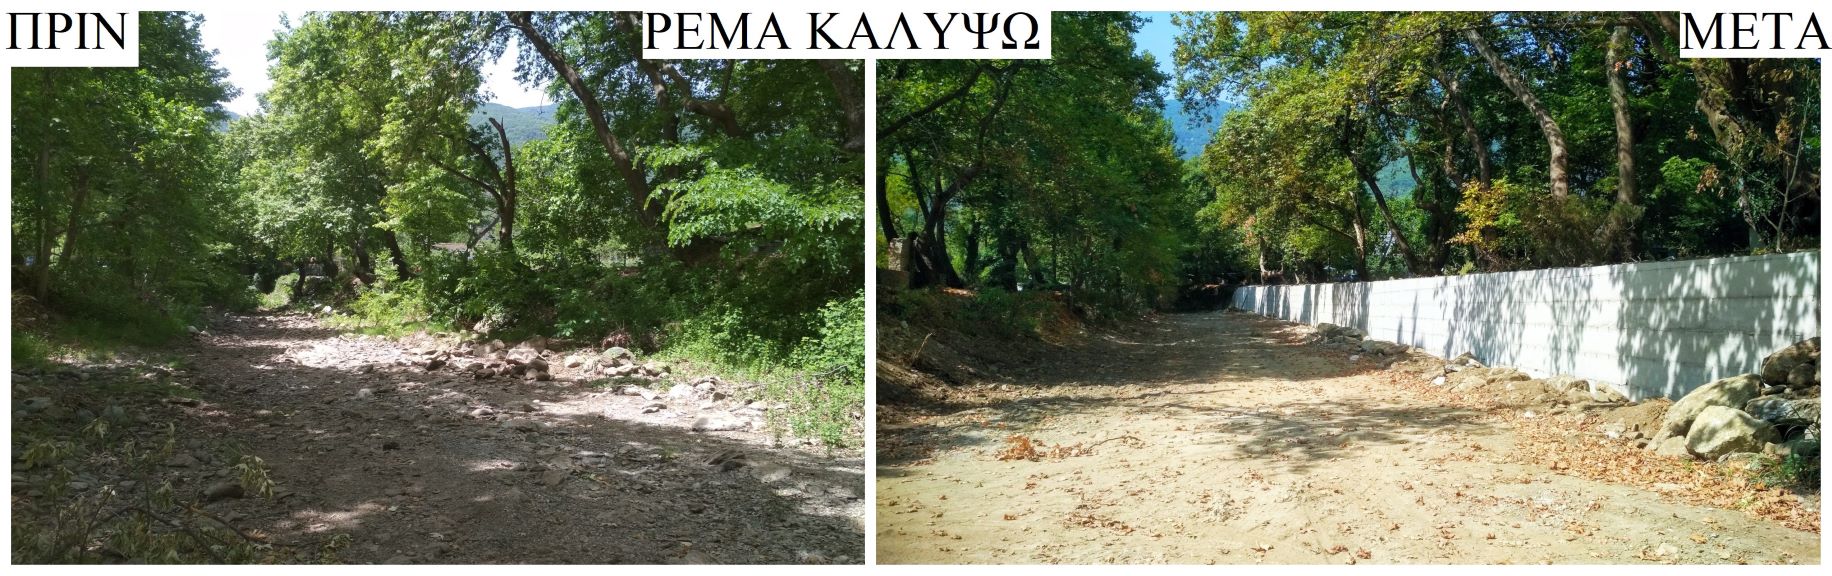 Καθάρισε ρέματα μήκους 28 χλμ η Περιφέρεια Θεσσαλίας στο Δήμο Αγιάς